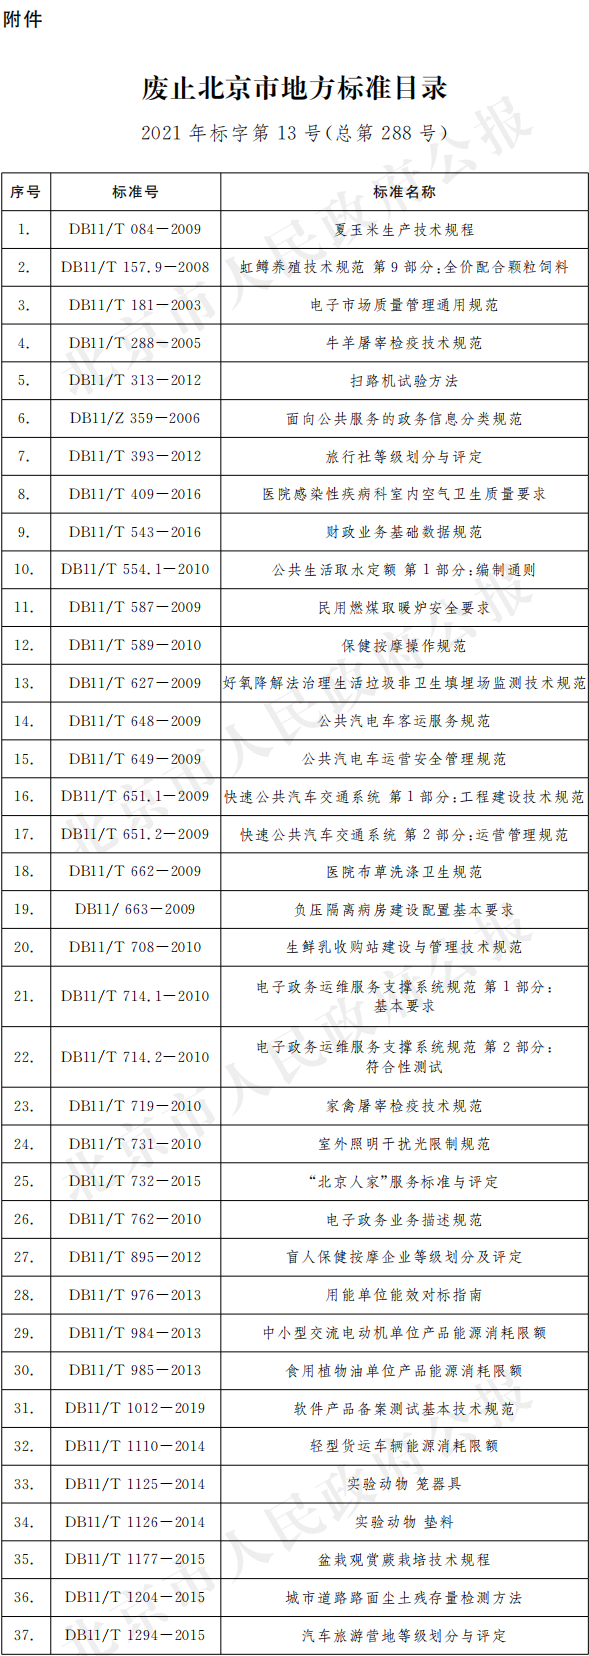 废止北京市地方标准目录2021年标字第13号(总第288号).png